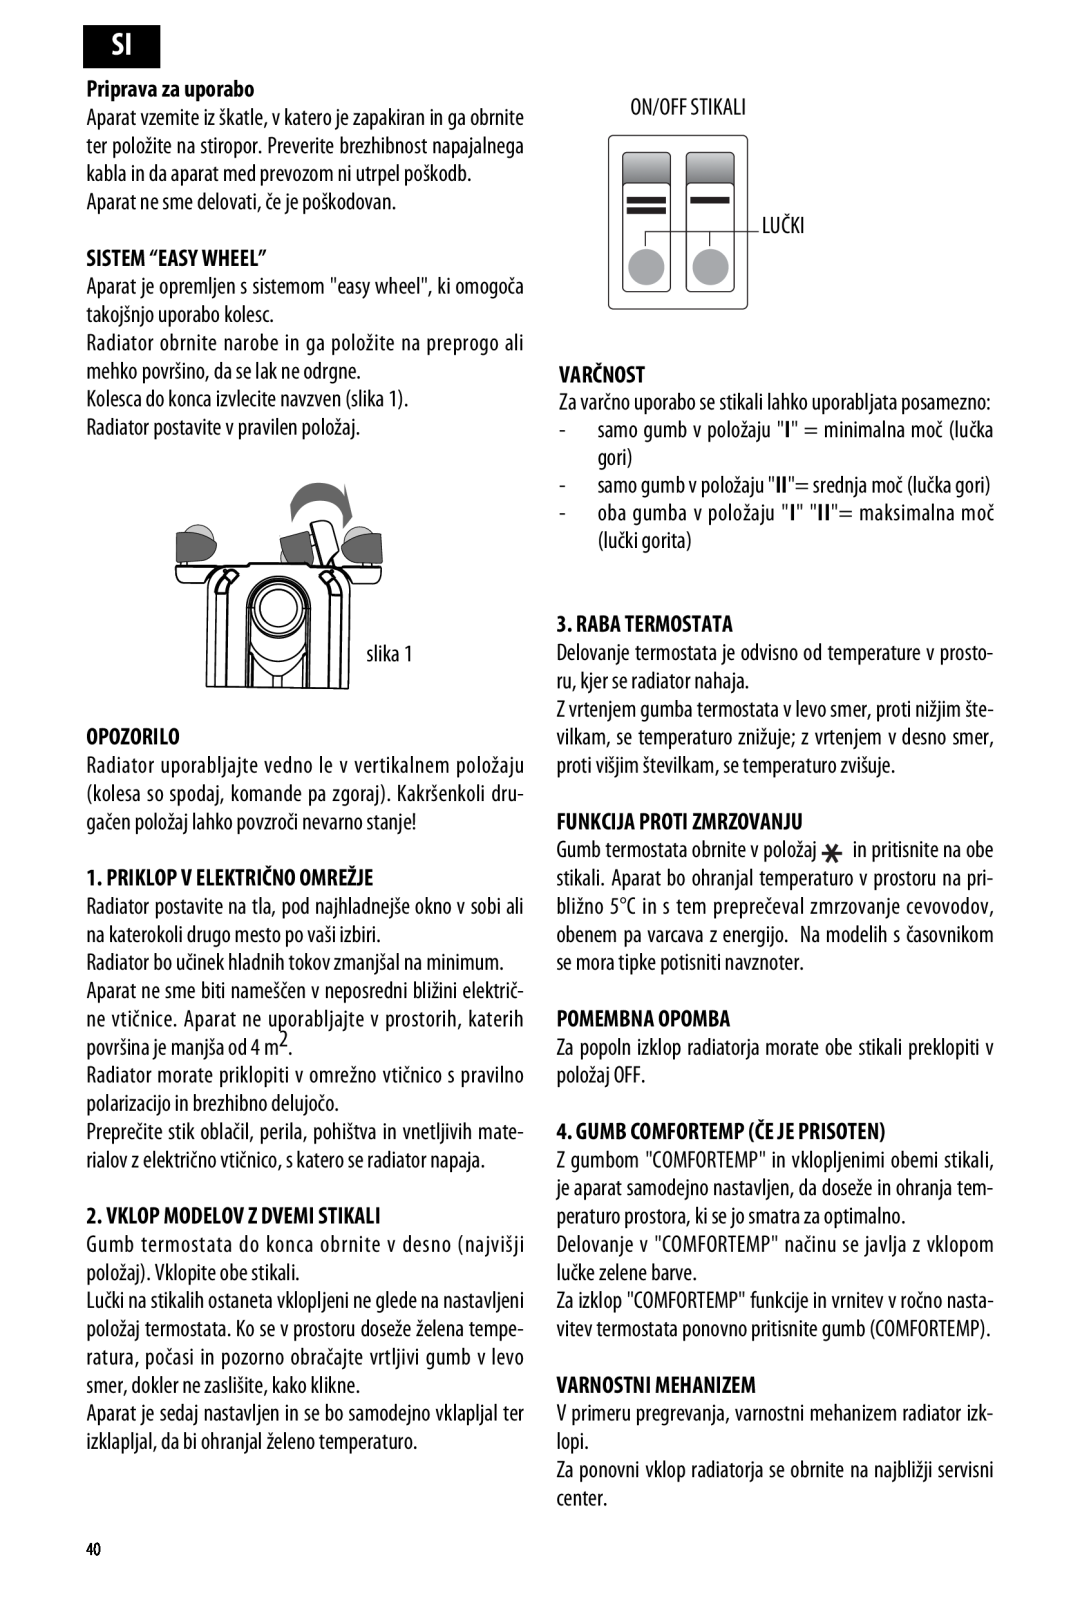 DeLonghi ME 10 manual Priprava za uporabo, Sistem “Easy Wheel”, Varčnost, Opozorilo, Priklop V Električno Omrežje 